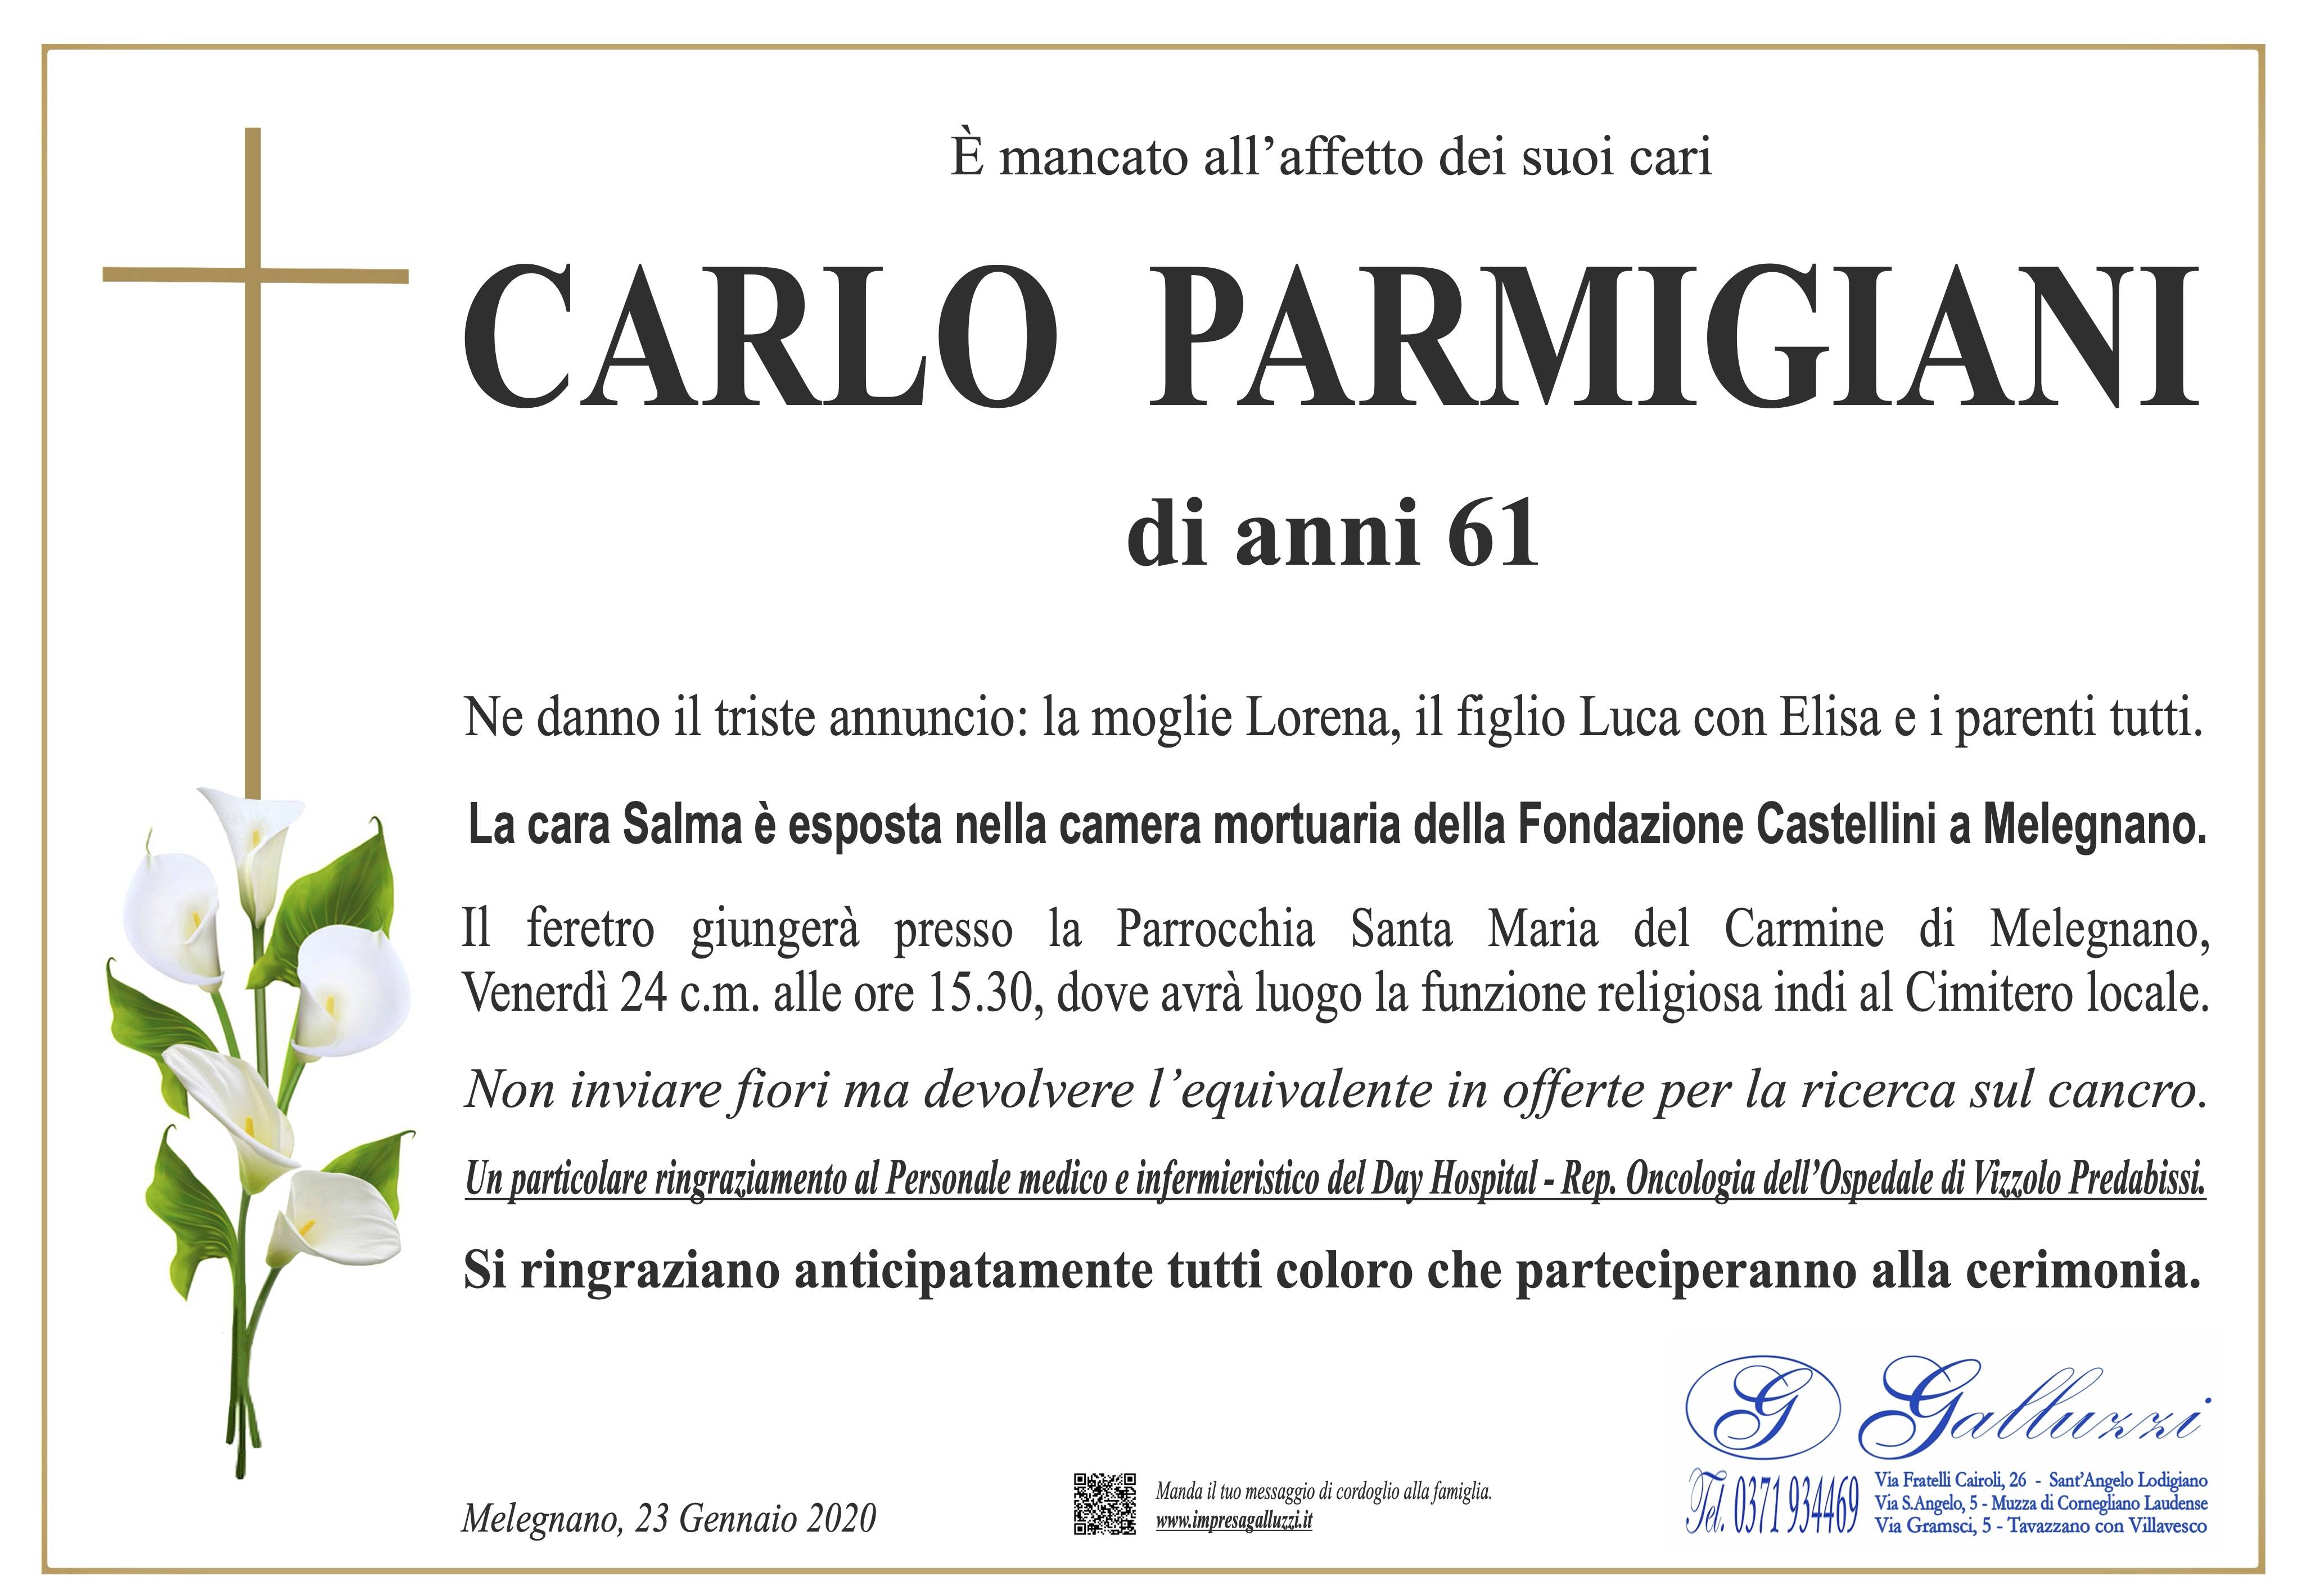 Carlo Parmigiani